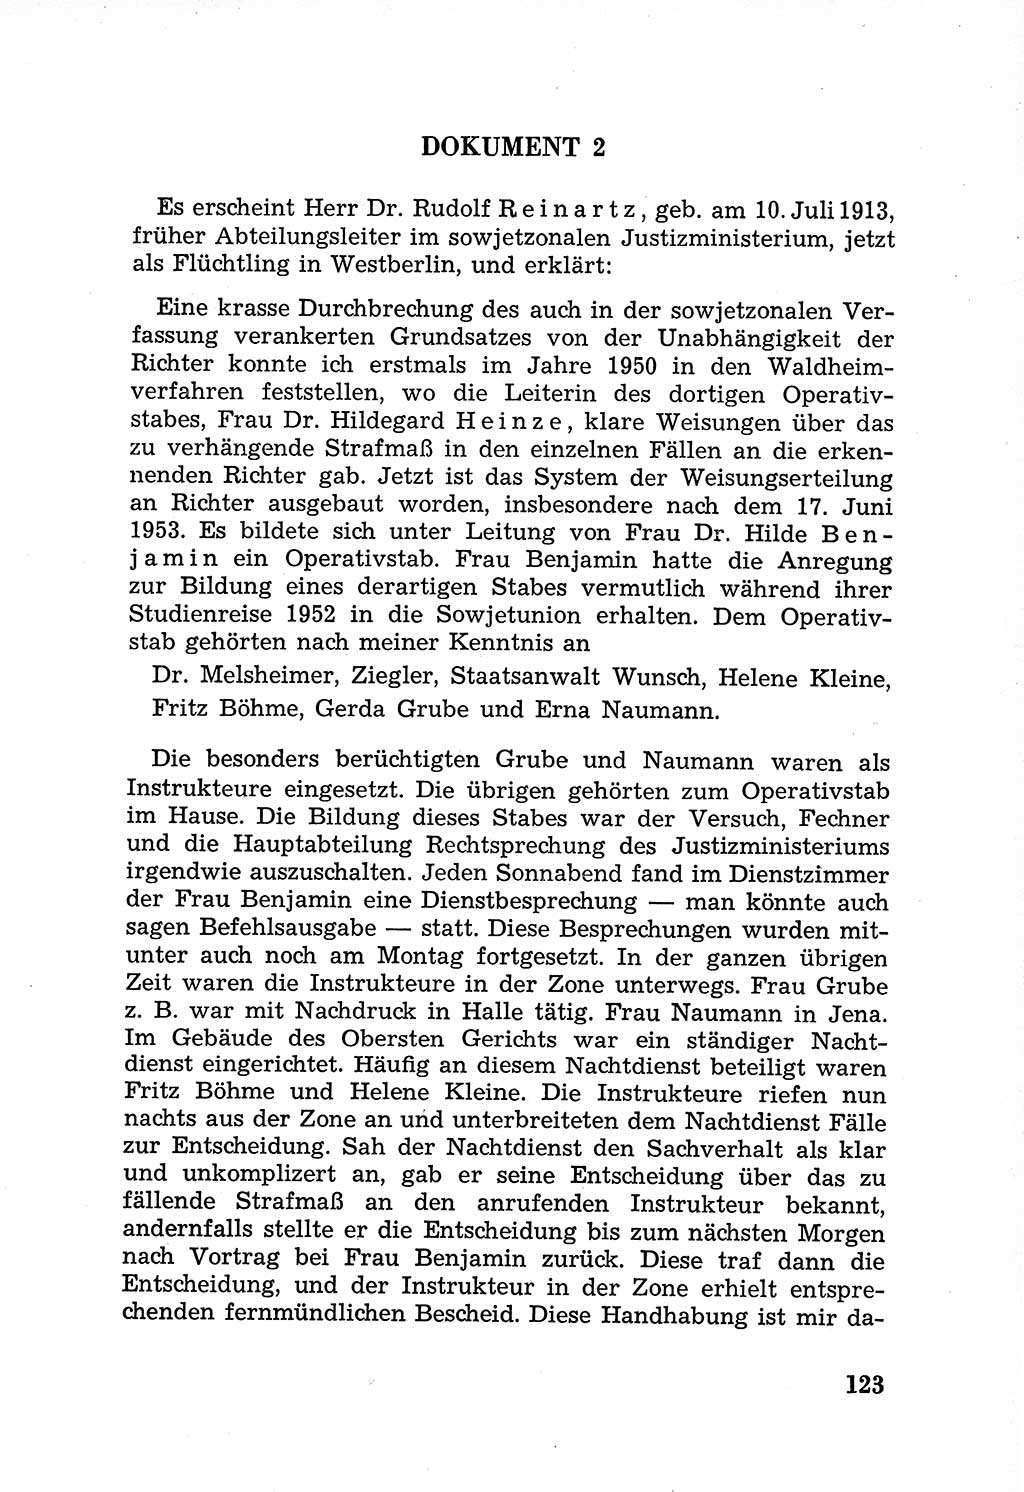 Rechtsstaat in zweierlei Hinsicht, Untersuchungsausschuß freiheitlicher Juristen (UfJ) [Bundesrepublik Deutschland (BRD)] 1956, Seite 123 (R.-St. UfJ BRD 1956, S. 123)